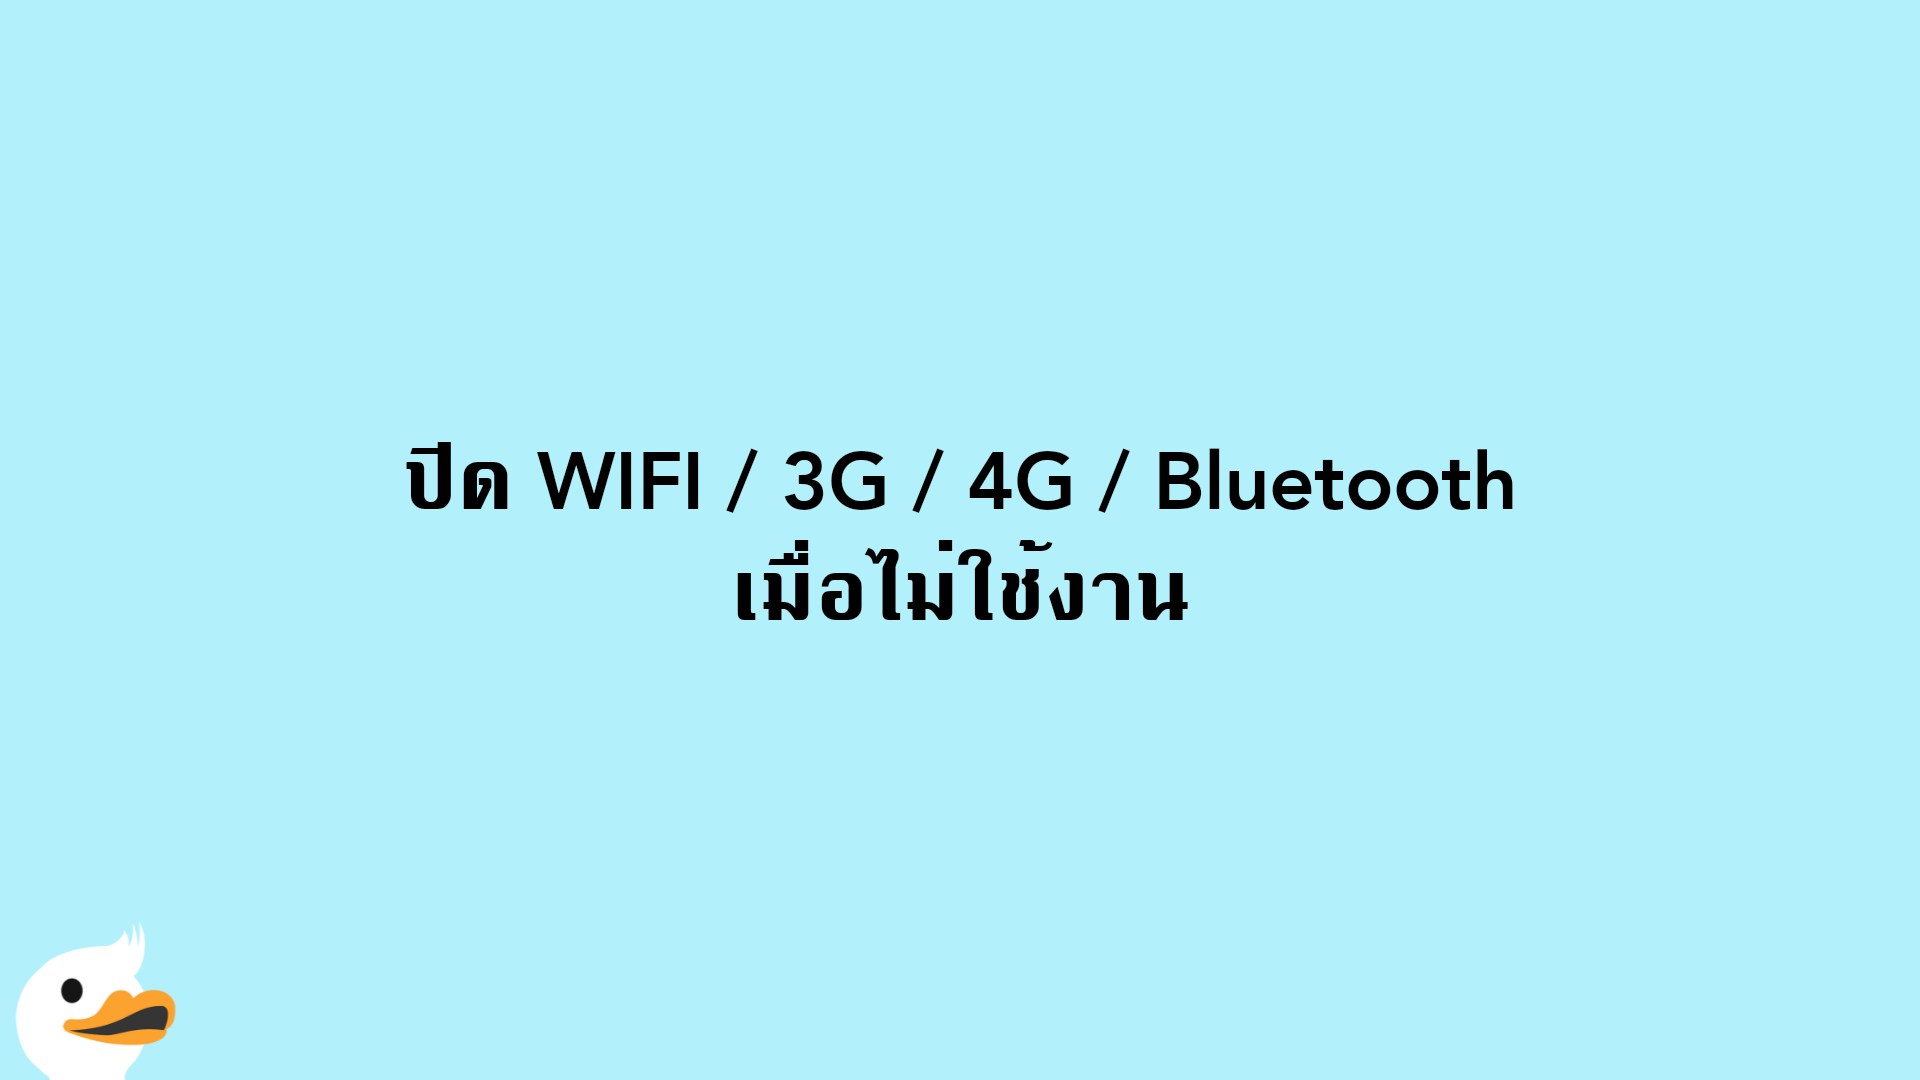 ปิด WIFI / 3G / 4G / Bluetooth เมื่อไม่ใช้งาน